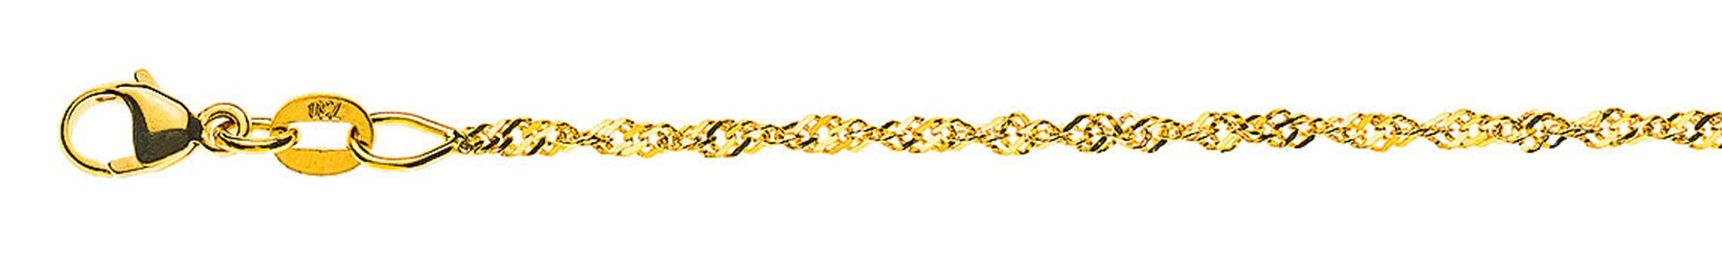 AURONOS Prestige Halskette Gelbgold 18K Singapurkette 60cm 1.5mm